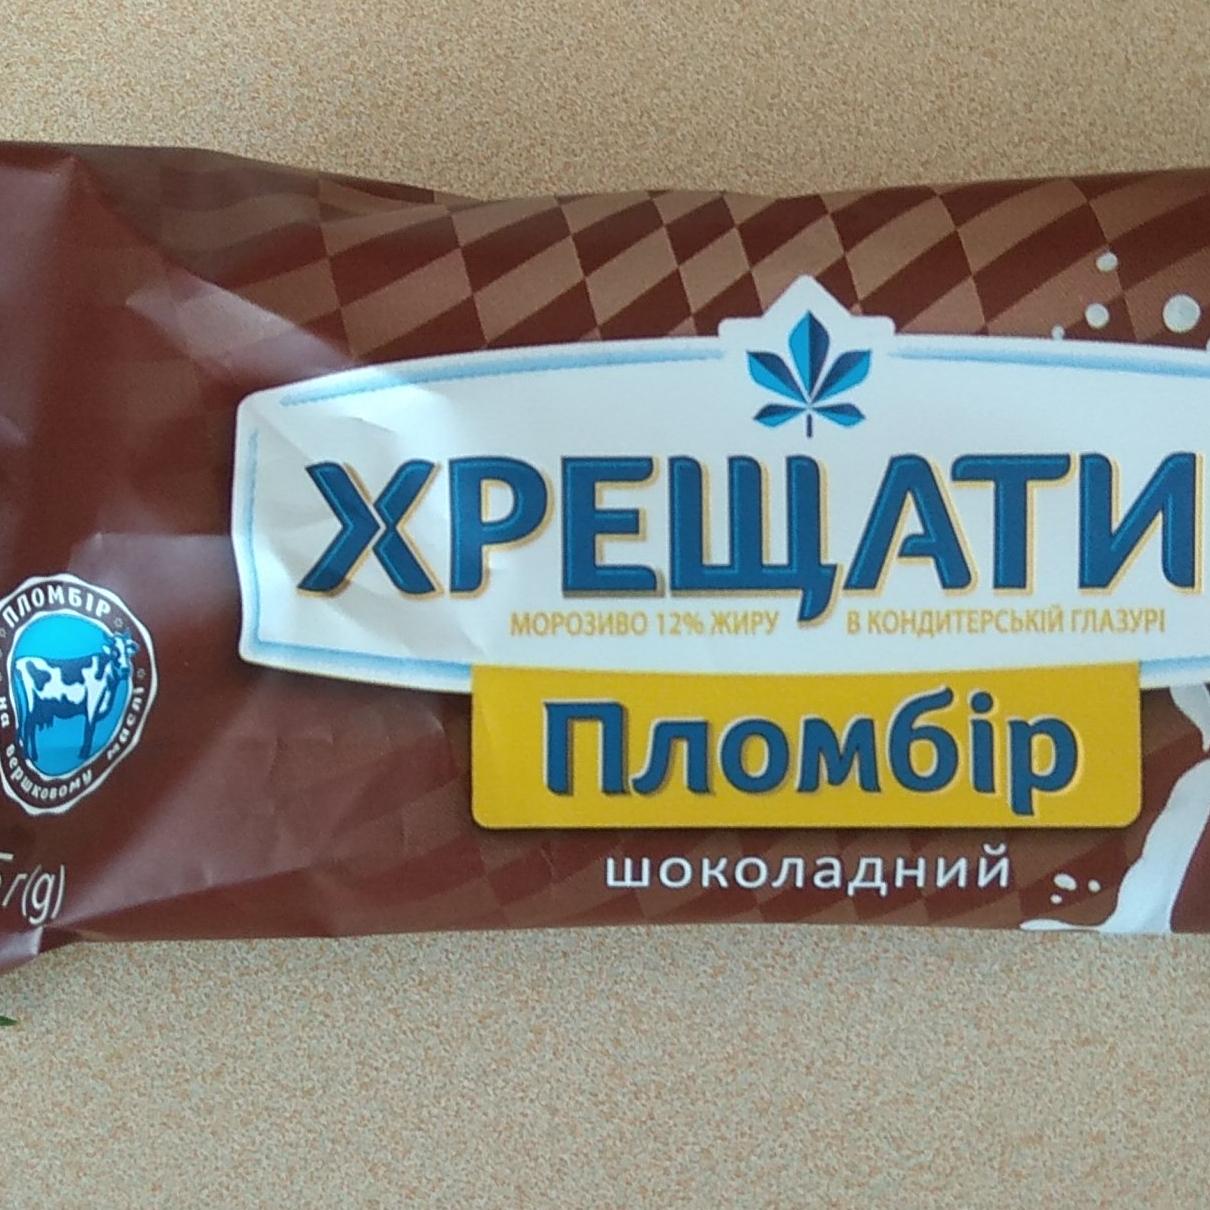 Фото - Мороженое шоколадное в кондитерской глазури Пломбир Хрещатик